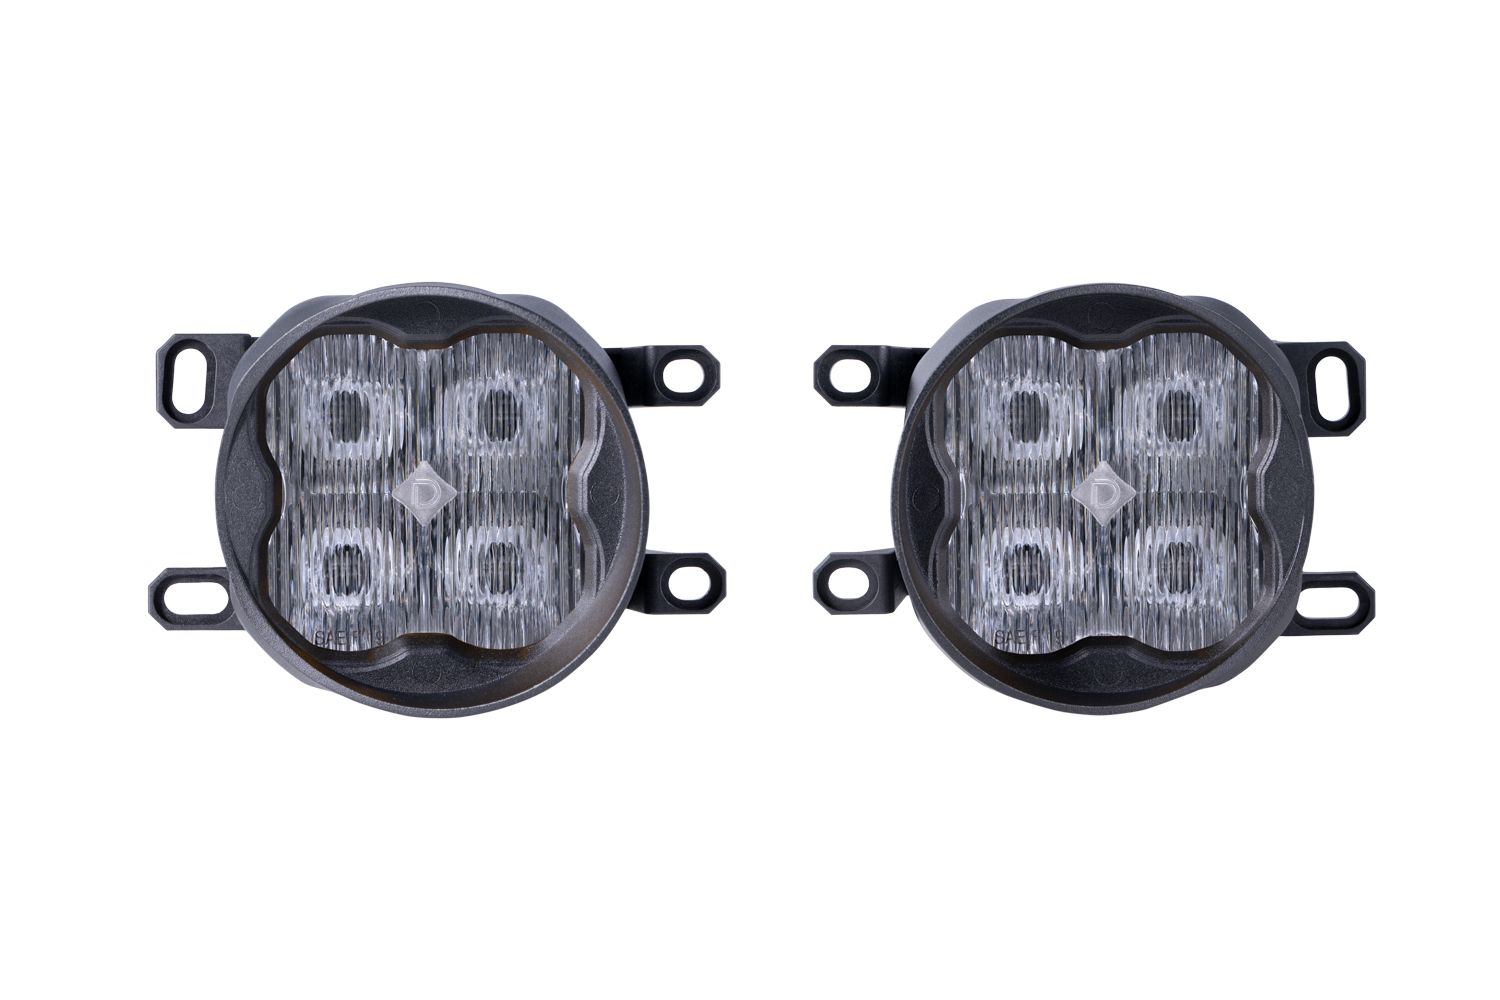 SS3 LED Fog Light Kit For 2014-2015 Lexus IS250